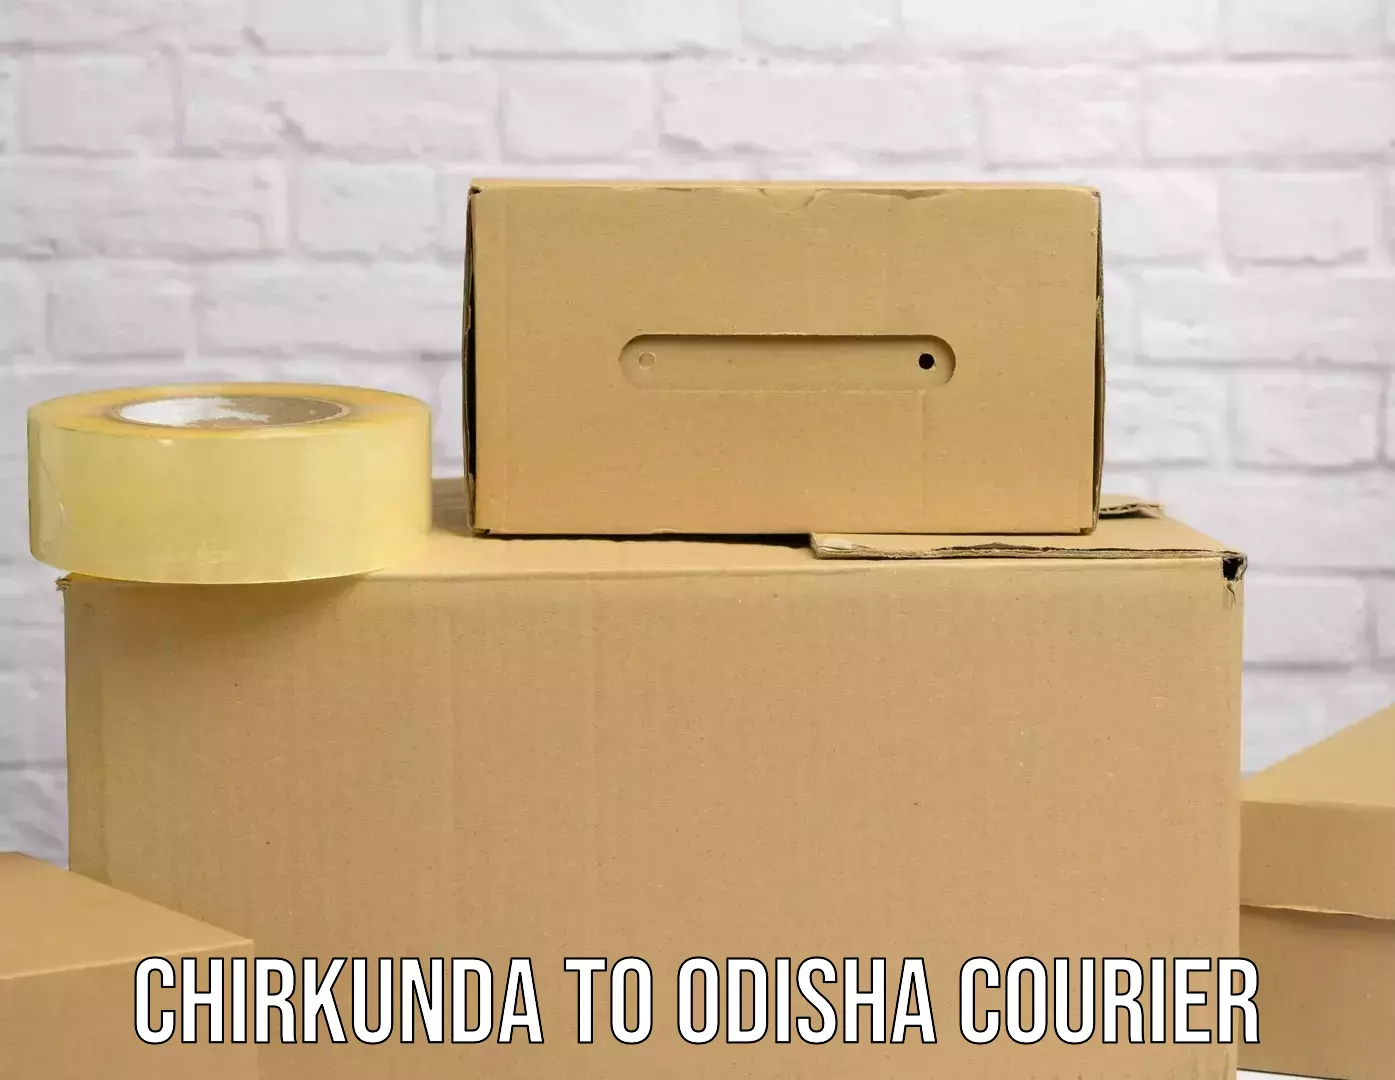 Premium courier solutions Chirkunda to Jajpur